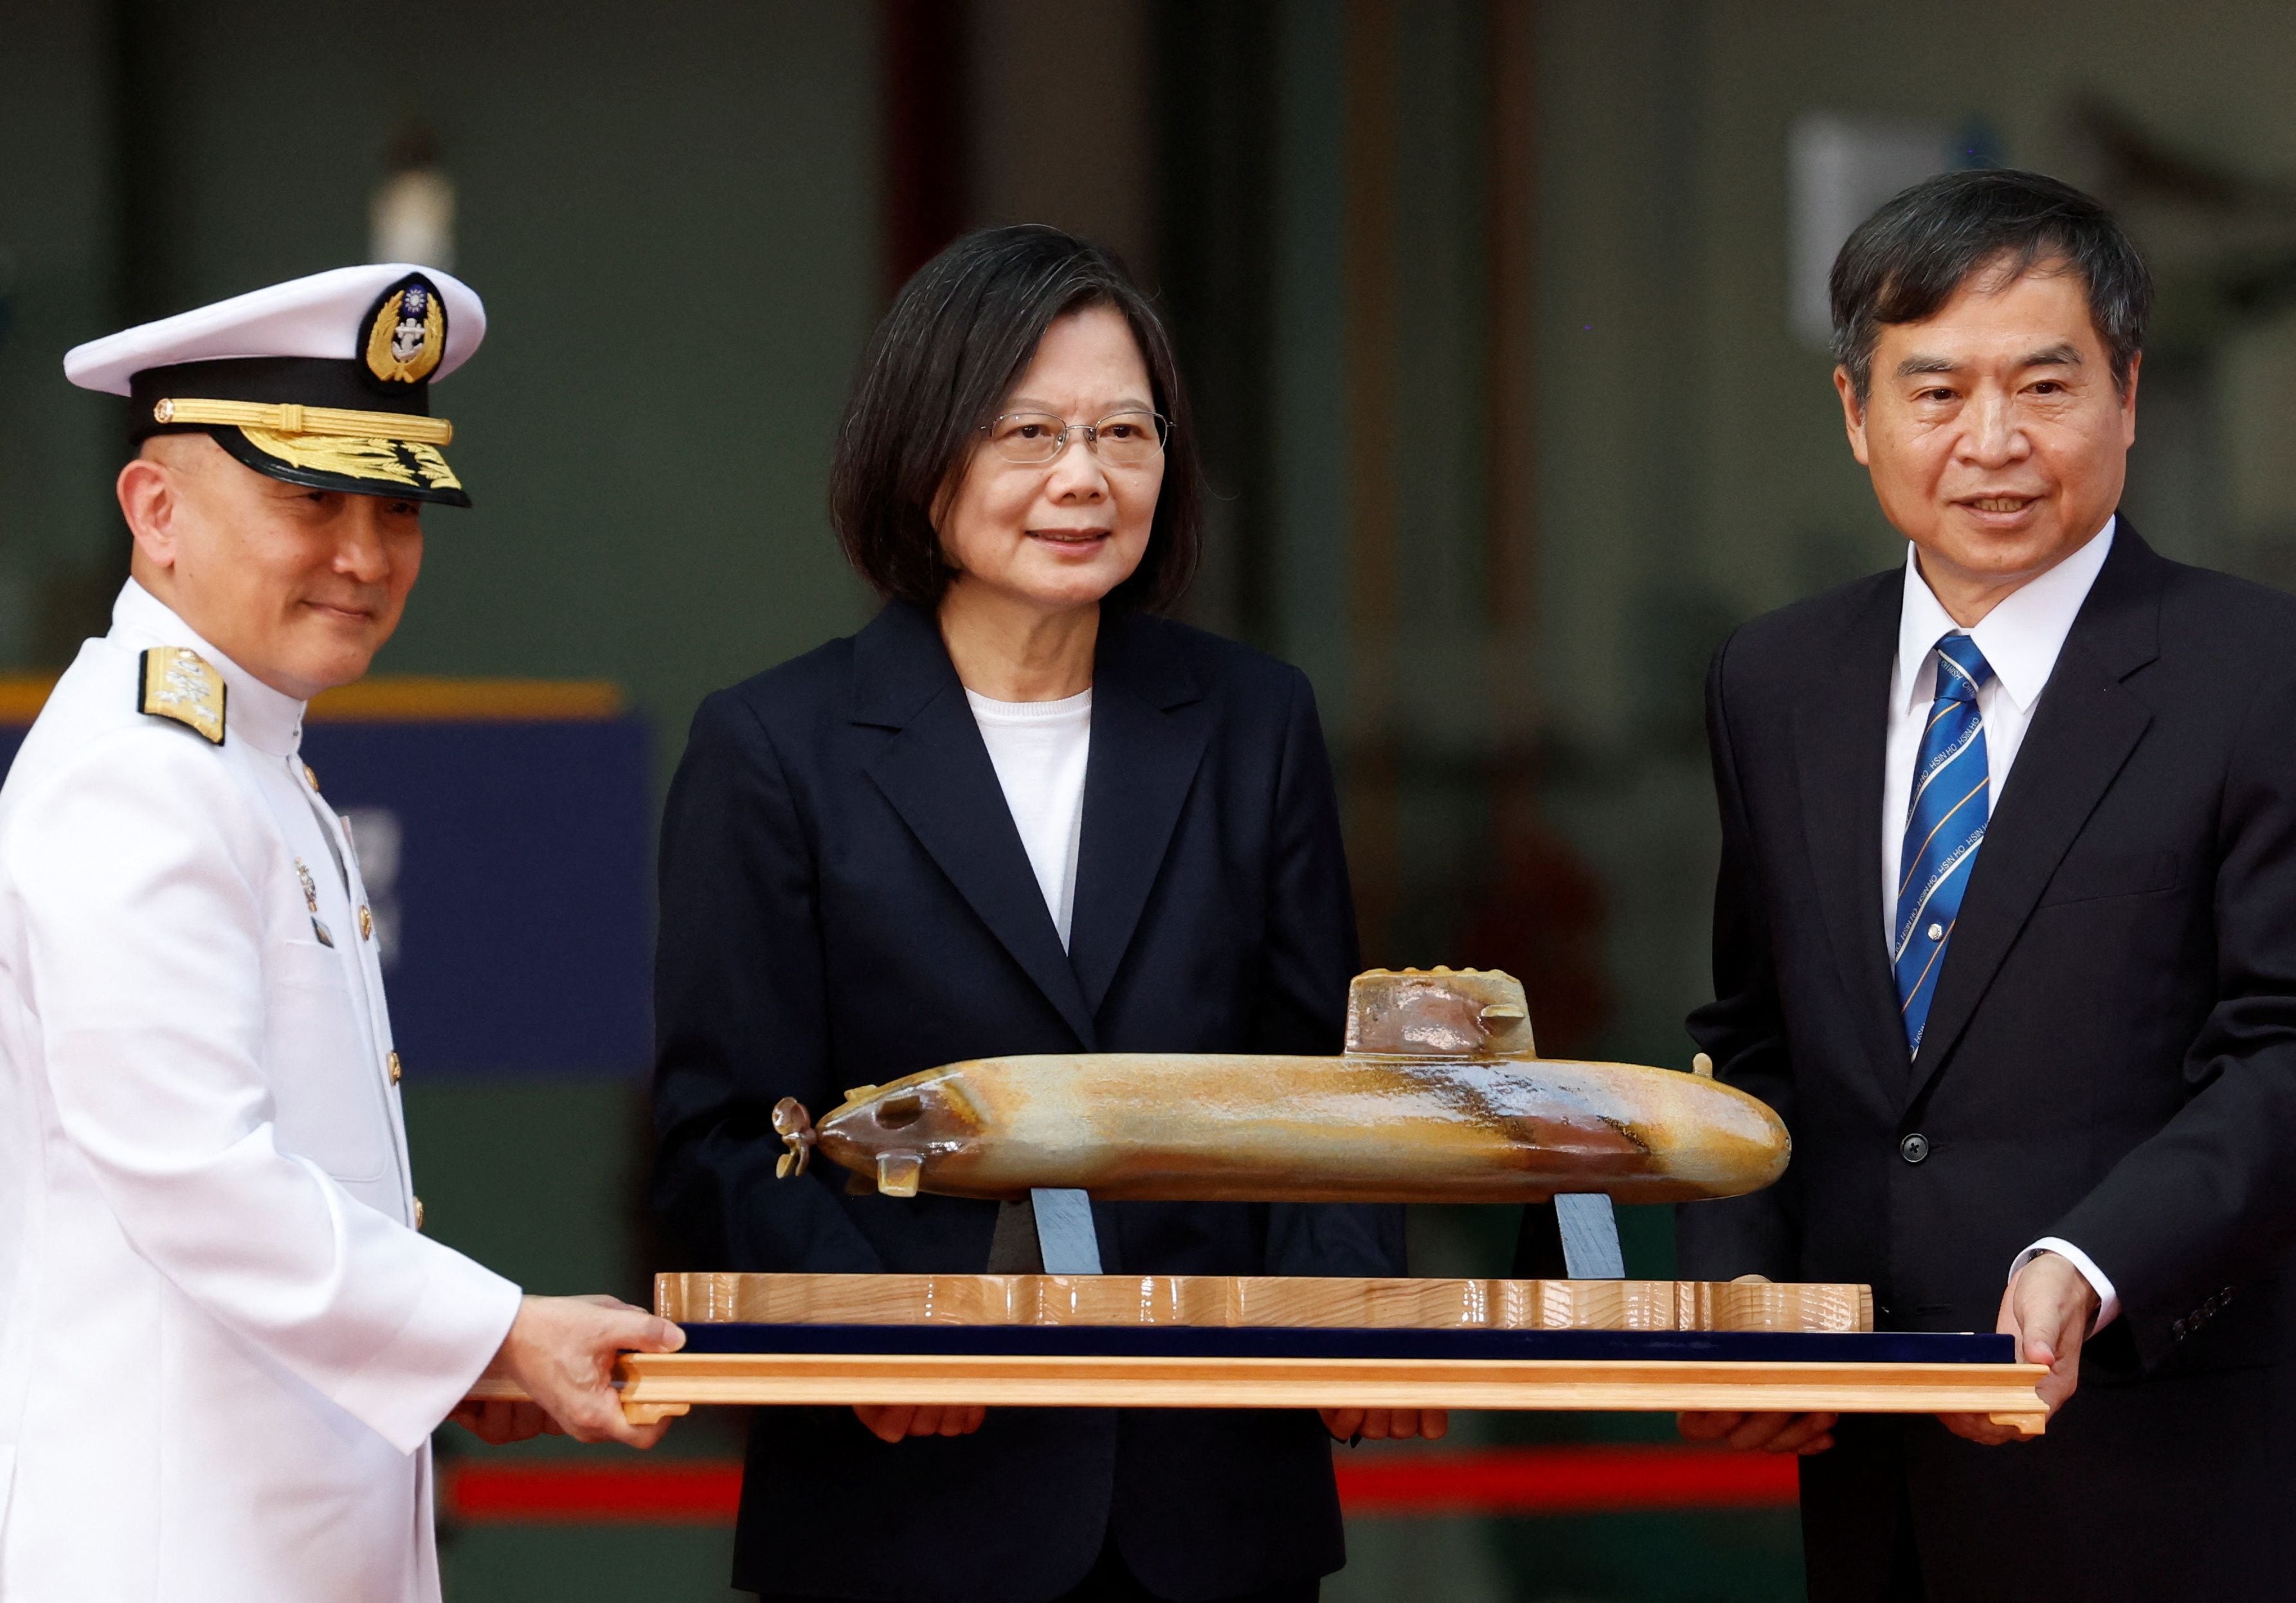 La presidenta taiwanesa, Tsai Ing-wen, afirmó en un discurso en la ciudad sureña de Kaohsiung, donde se presentó el sumergible, que el buque formará parte de los esfuerzos isleños para “proteger Taiwán”. (REUTERS)